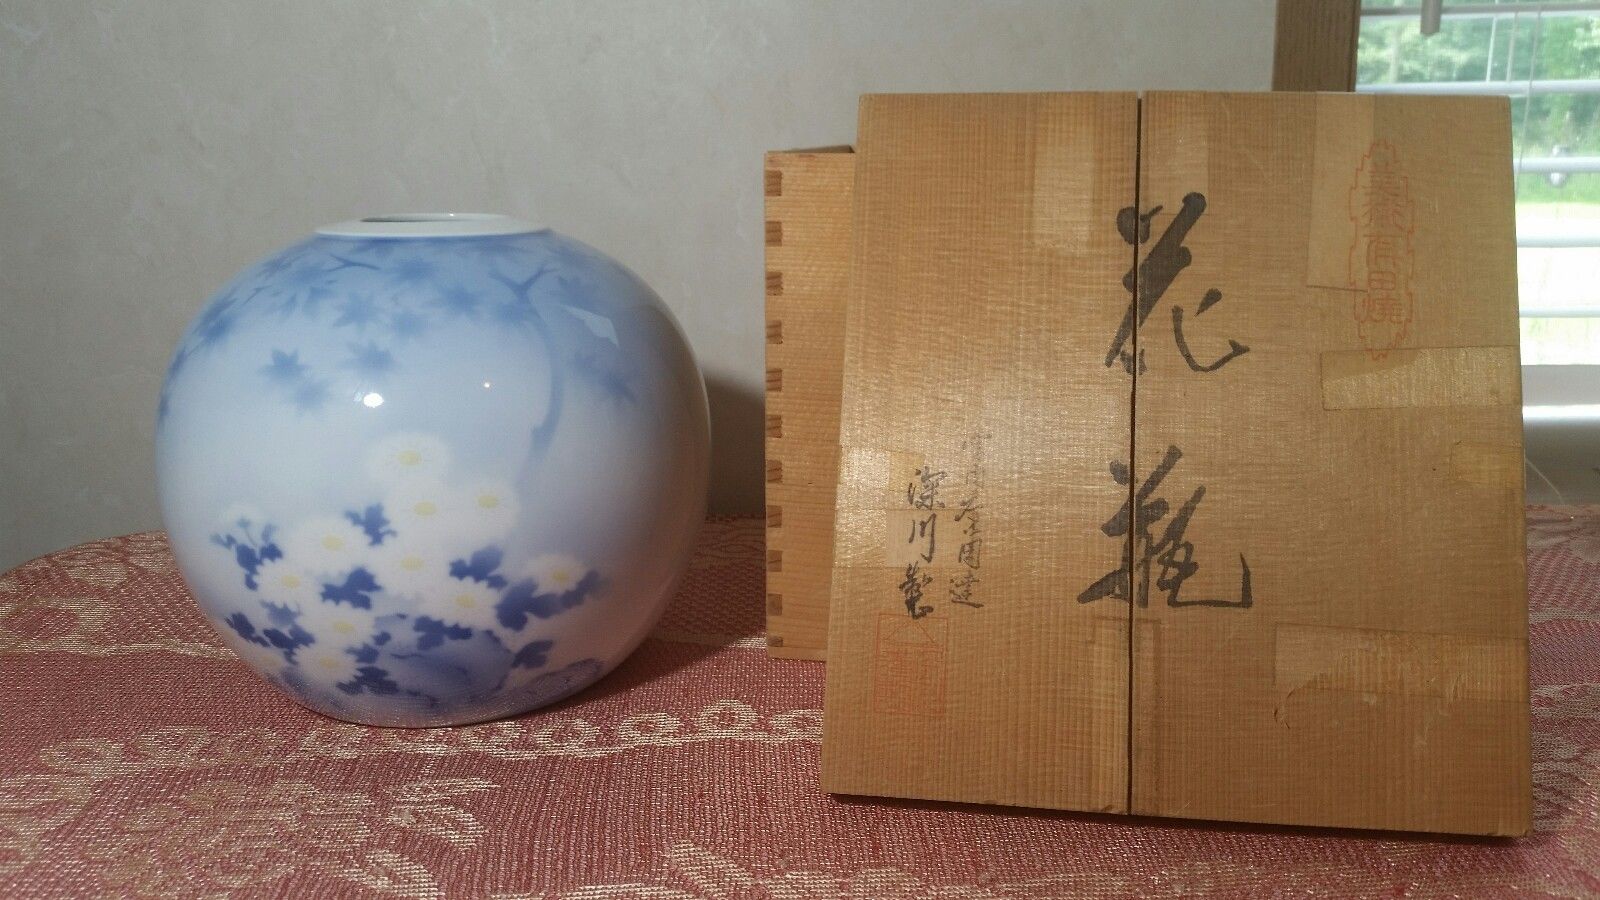 Shirokiya Vase Round with Flowers ~ Original Wood Shipping Box Crate ~ Japanese